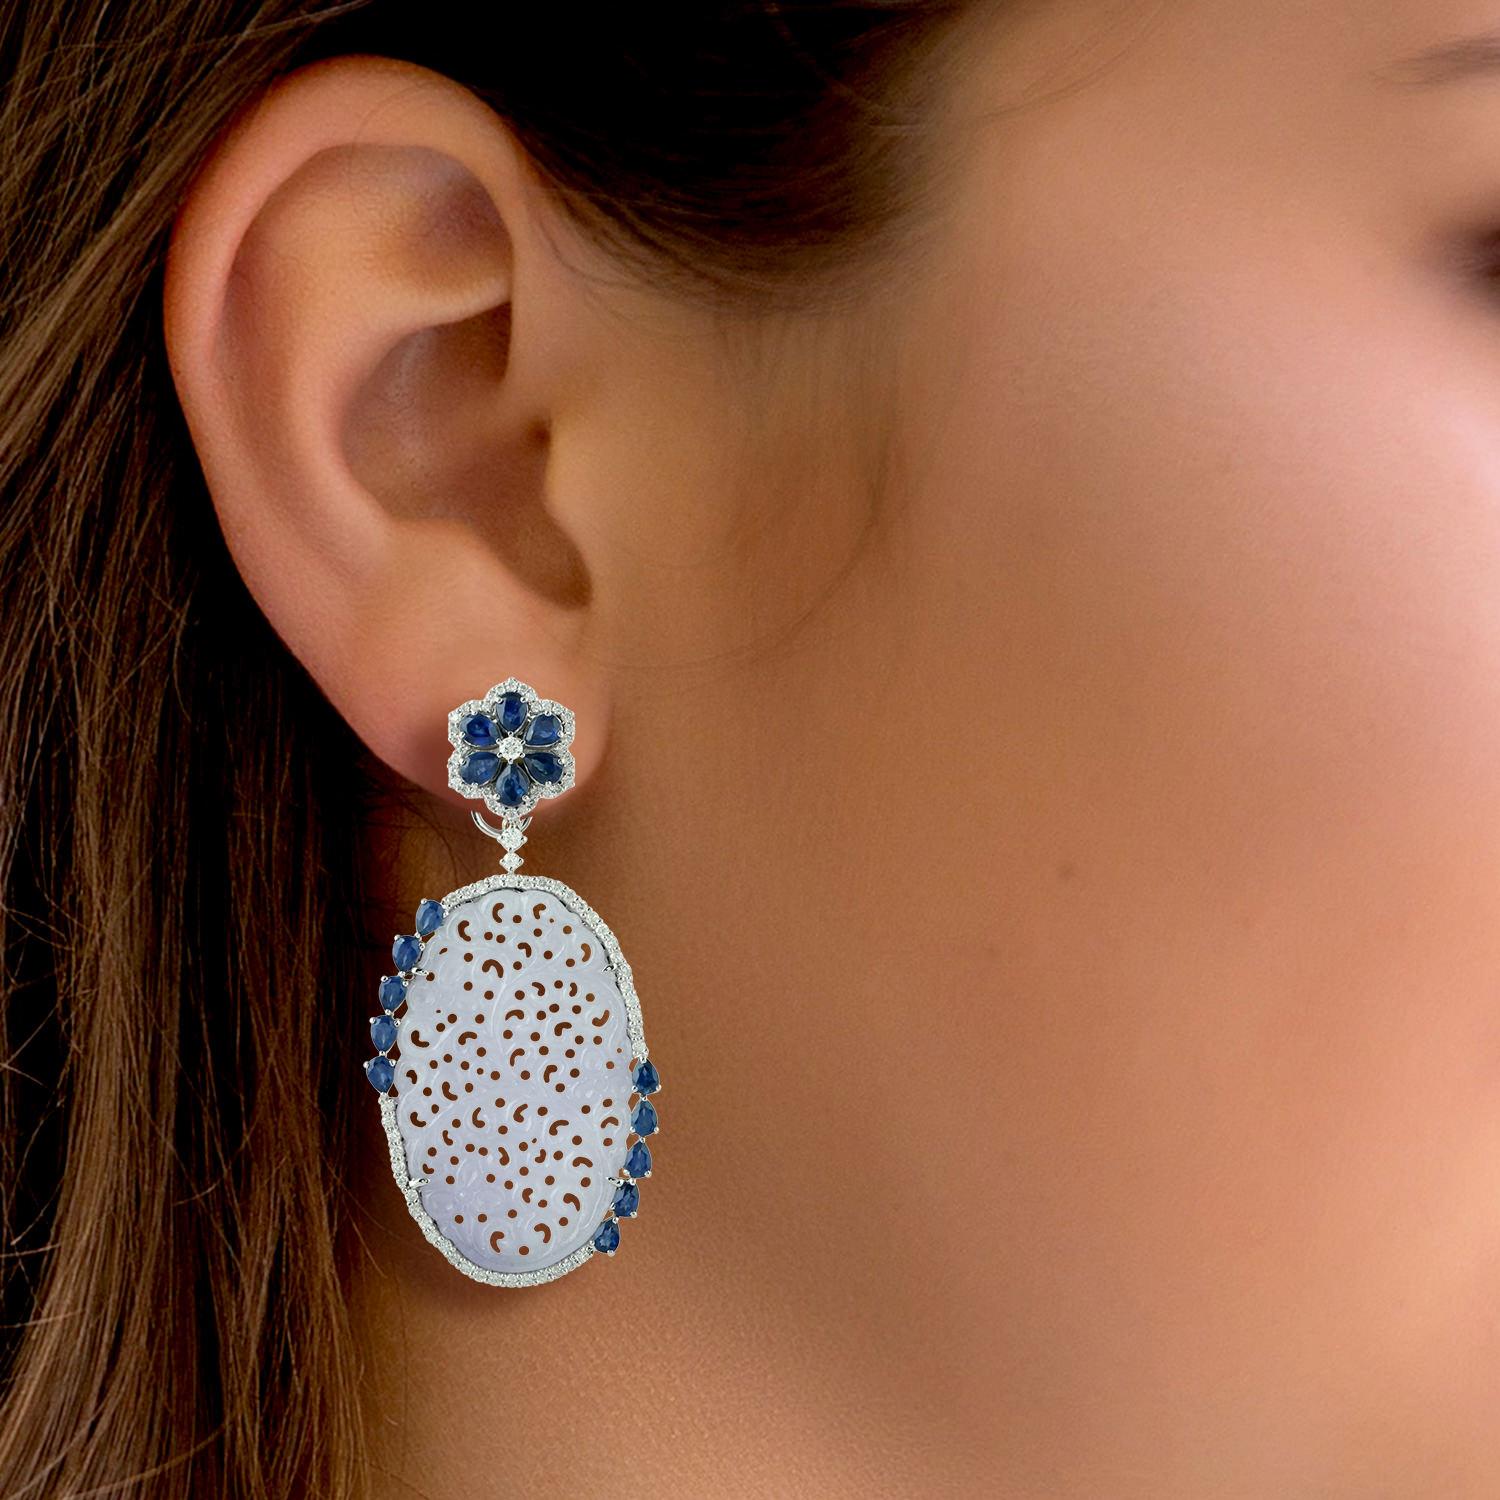 Ces superbes boucles d'oreilles en jade sculpté à la main sont fabriquées en or 18 carats. Elle est sertie de 38,87 carats de jade, de 4,91 carats de saphir bleu et de 1,23 carat de diamants étincelants.

SUIVRE  La vitrine de MEGHNA JEWELS pour